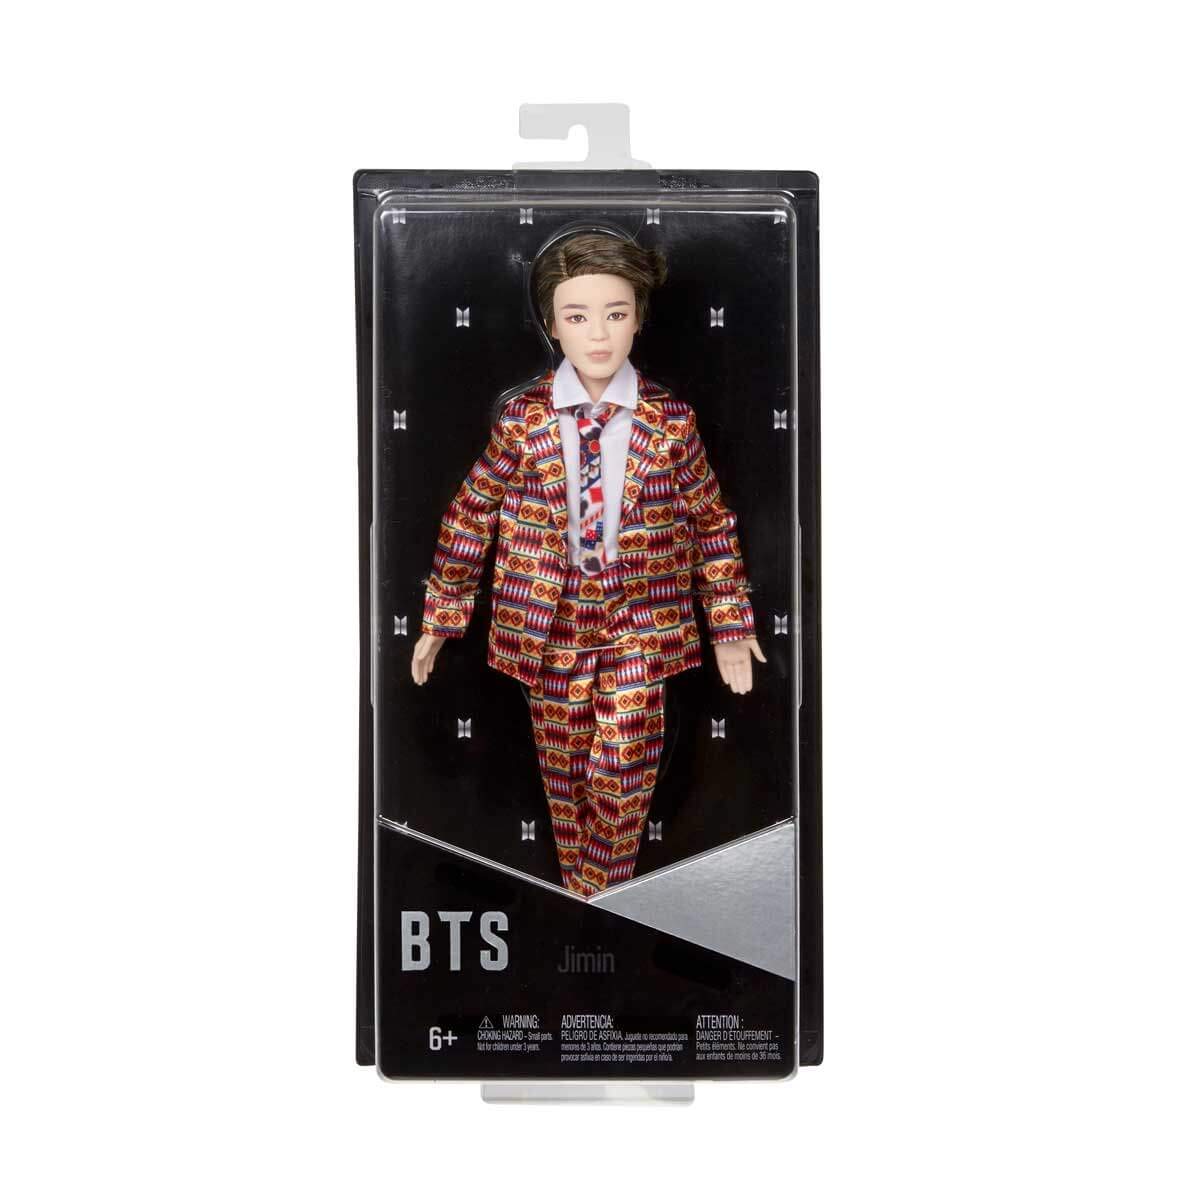 Parfait Bts X Mattel Poupée Jimin, à L’effigie du Membre du Groupe de K-pop, Figurine à Collectionner, Gkc93 slZ5Ue12F tout pour vous